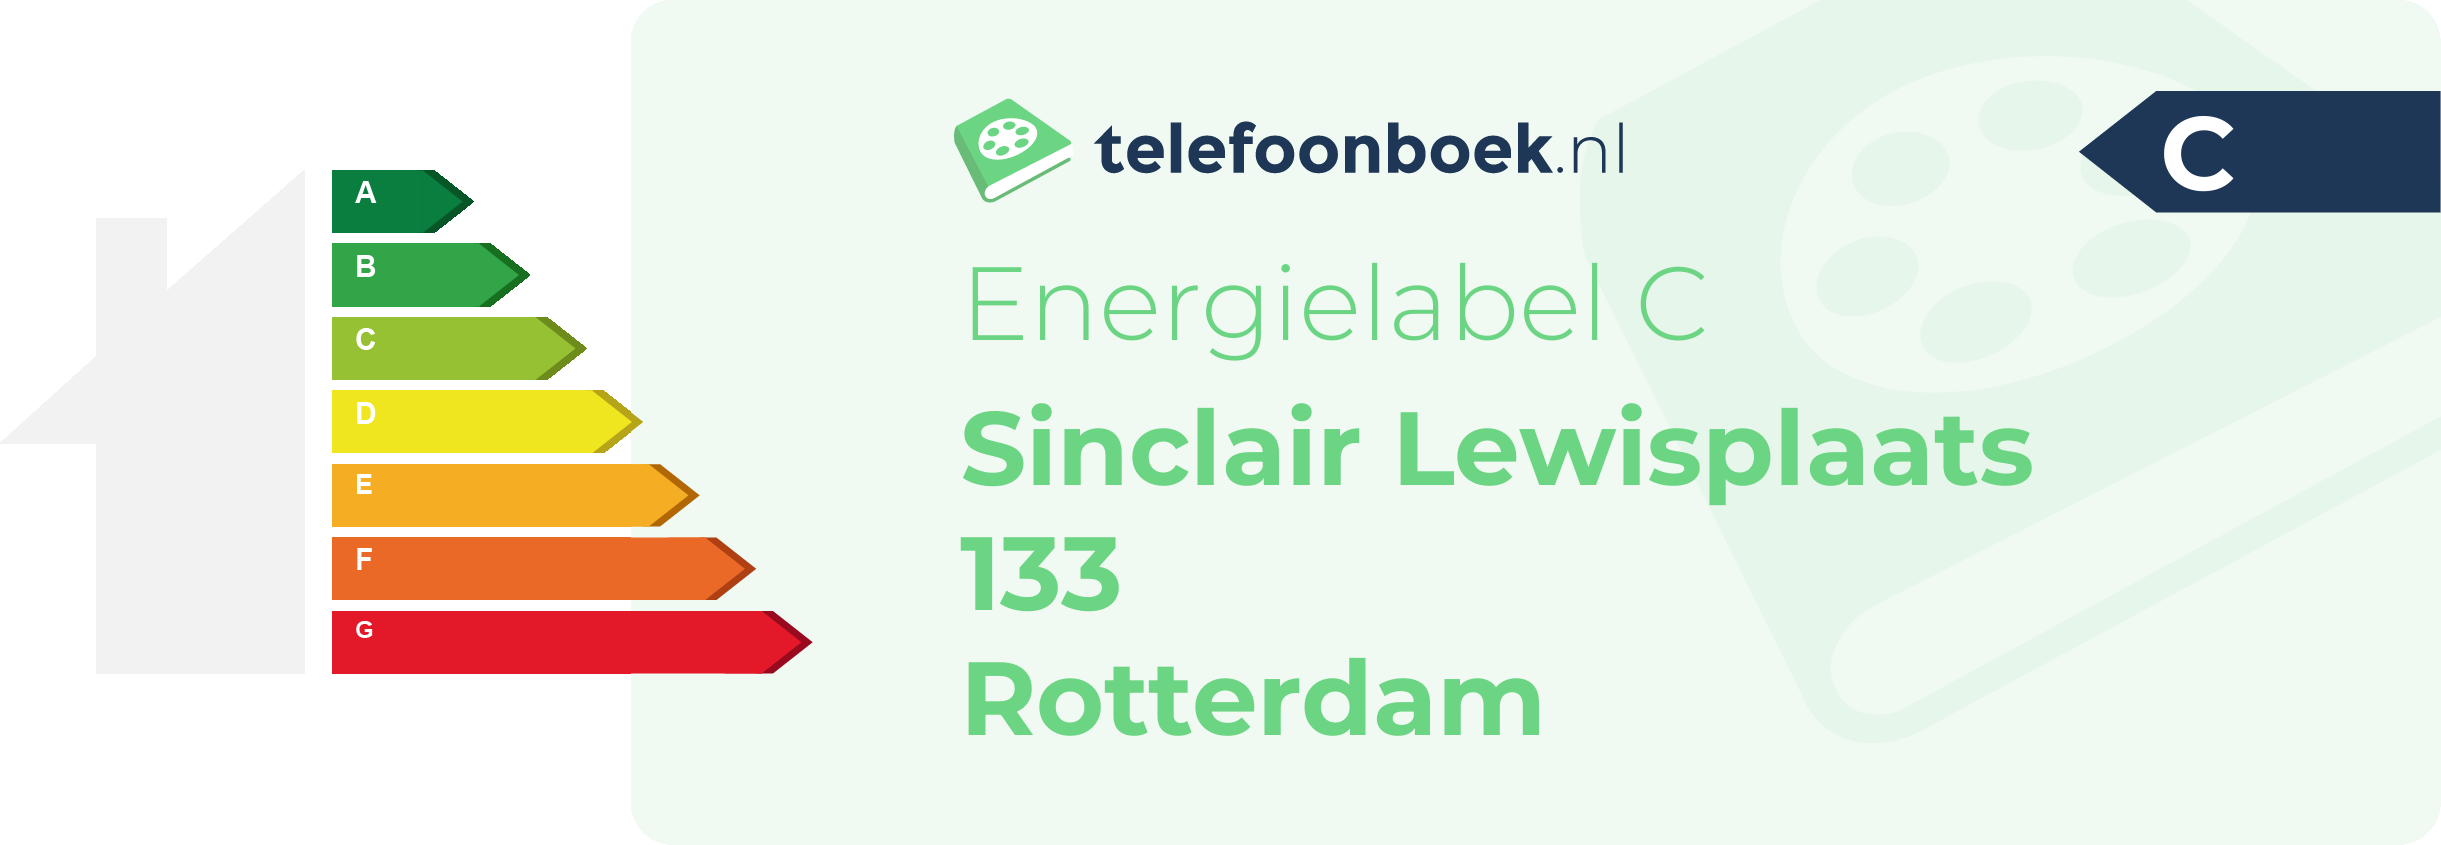 Energielabel Sinclair Lewisplaats 133 Rotterdam